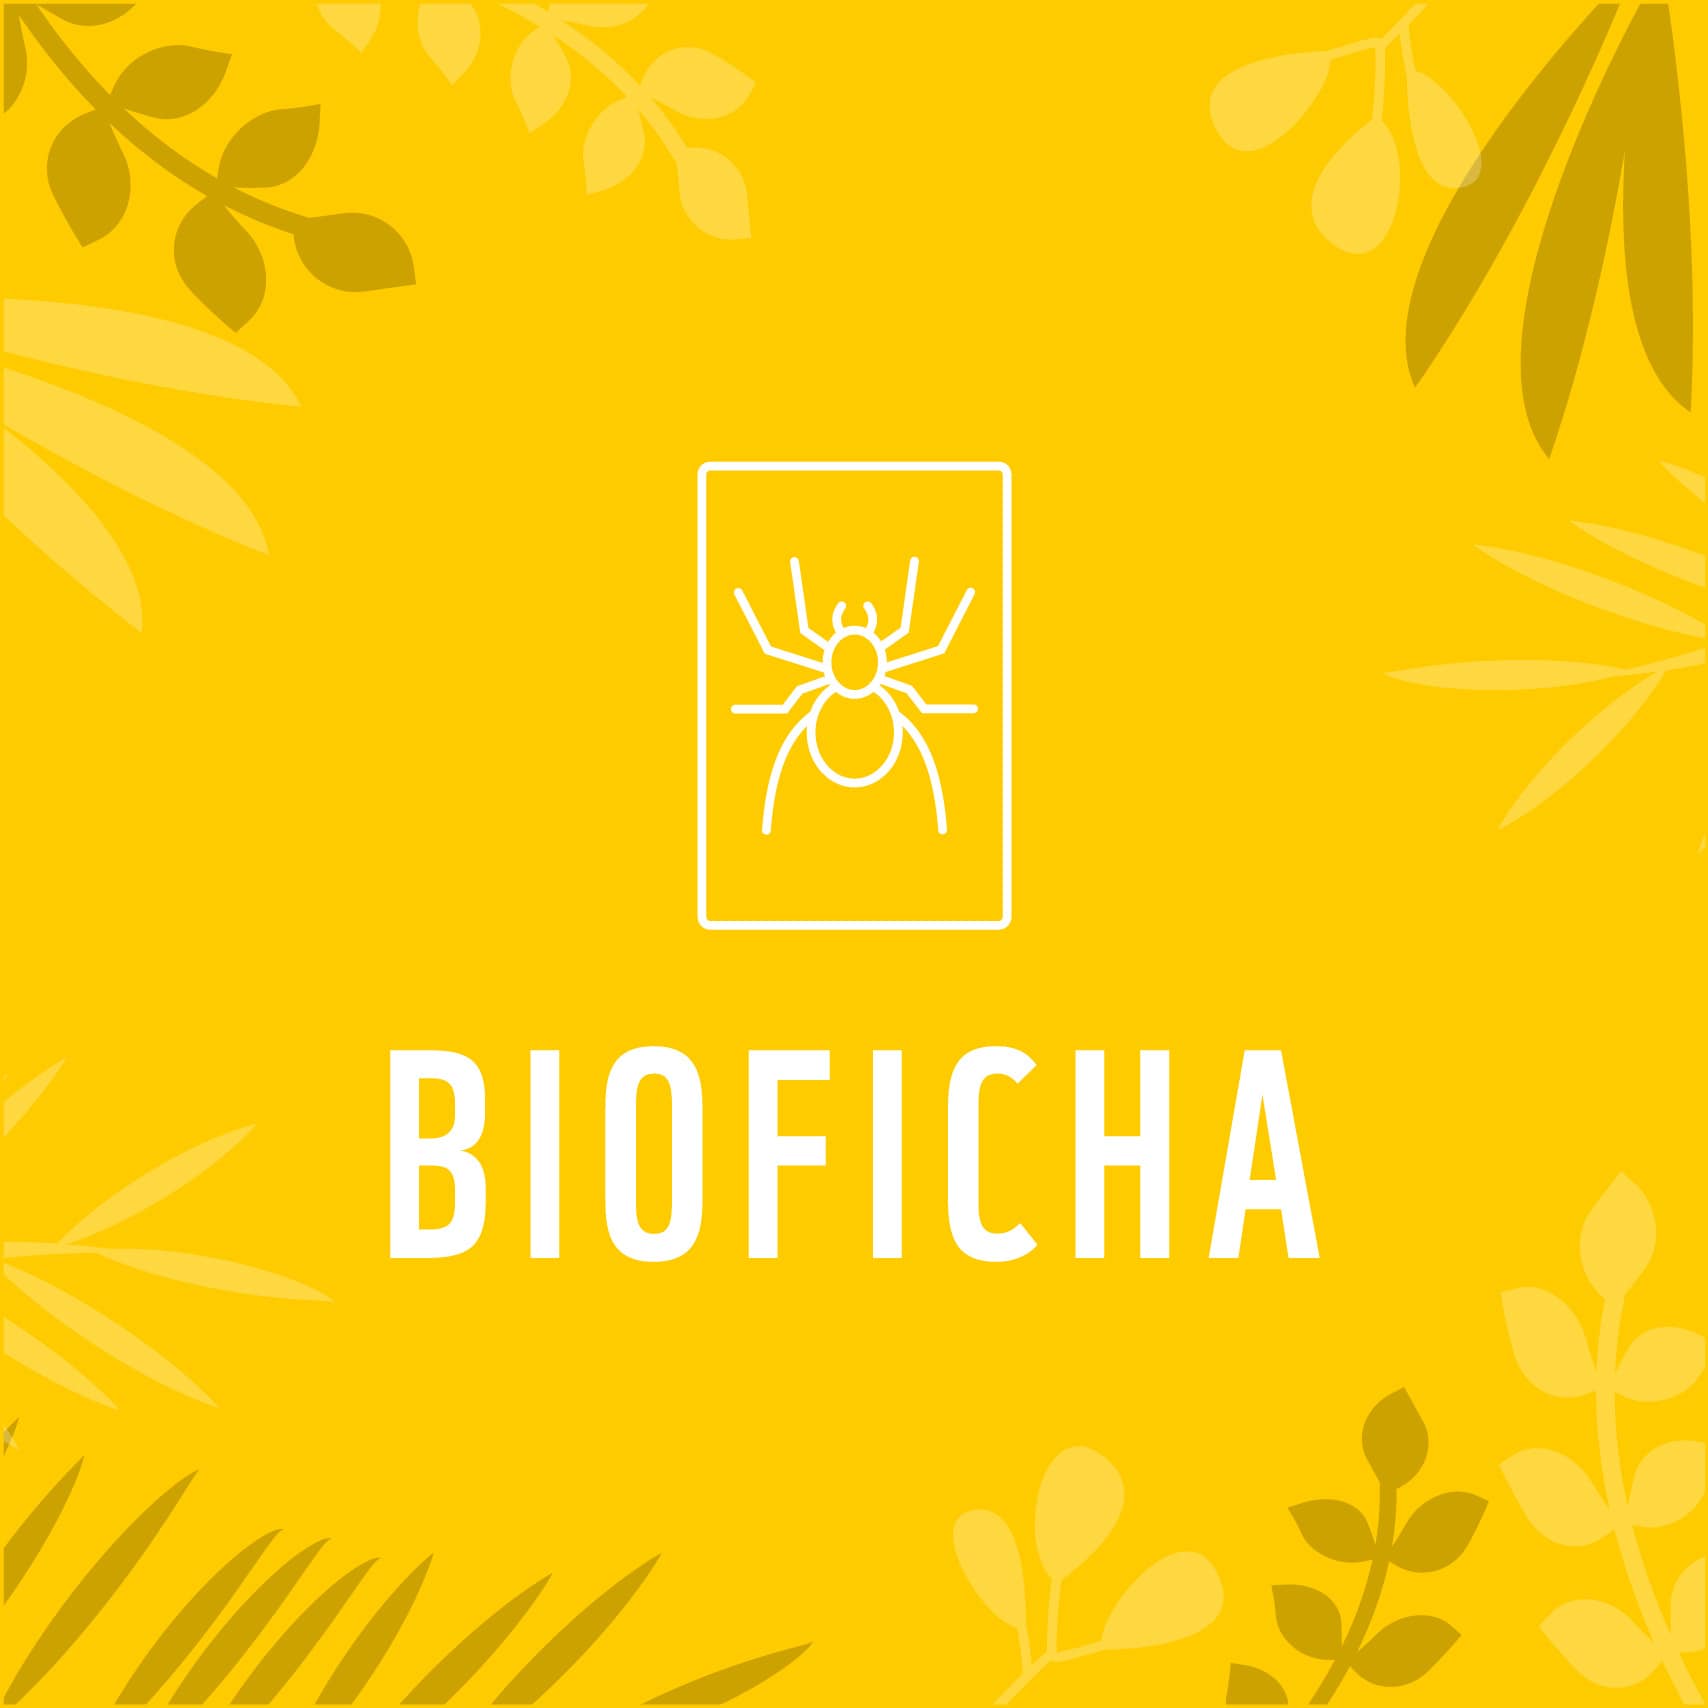 Bioficha Borochi